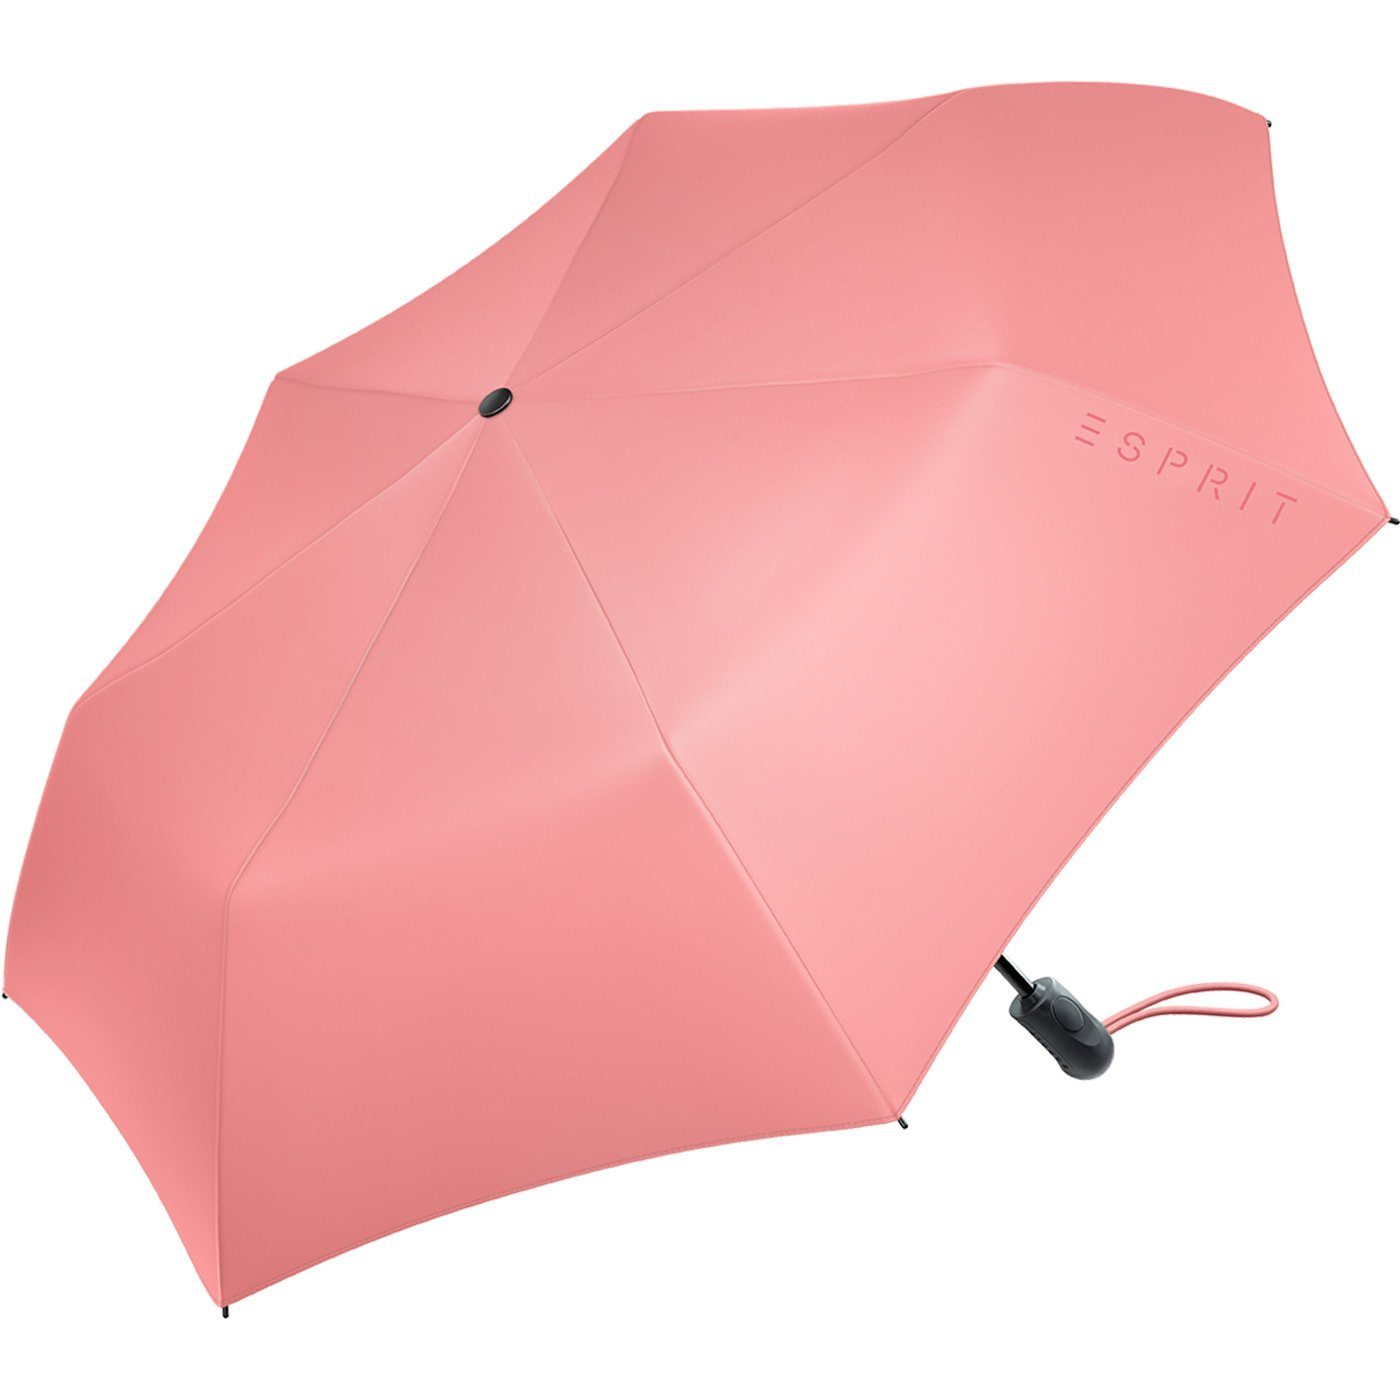 Esprit Taschenregenschirm und Light Auf-Zu Marke der Regenschirm in Typ Taschenschirm FJ mit für Damen Auf-Zu stabil Esprit, 2022, praktisch, Trendfarben, Damen neuen Easymatic Automatik den